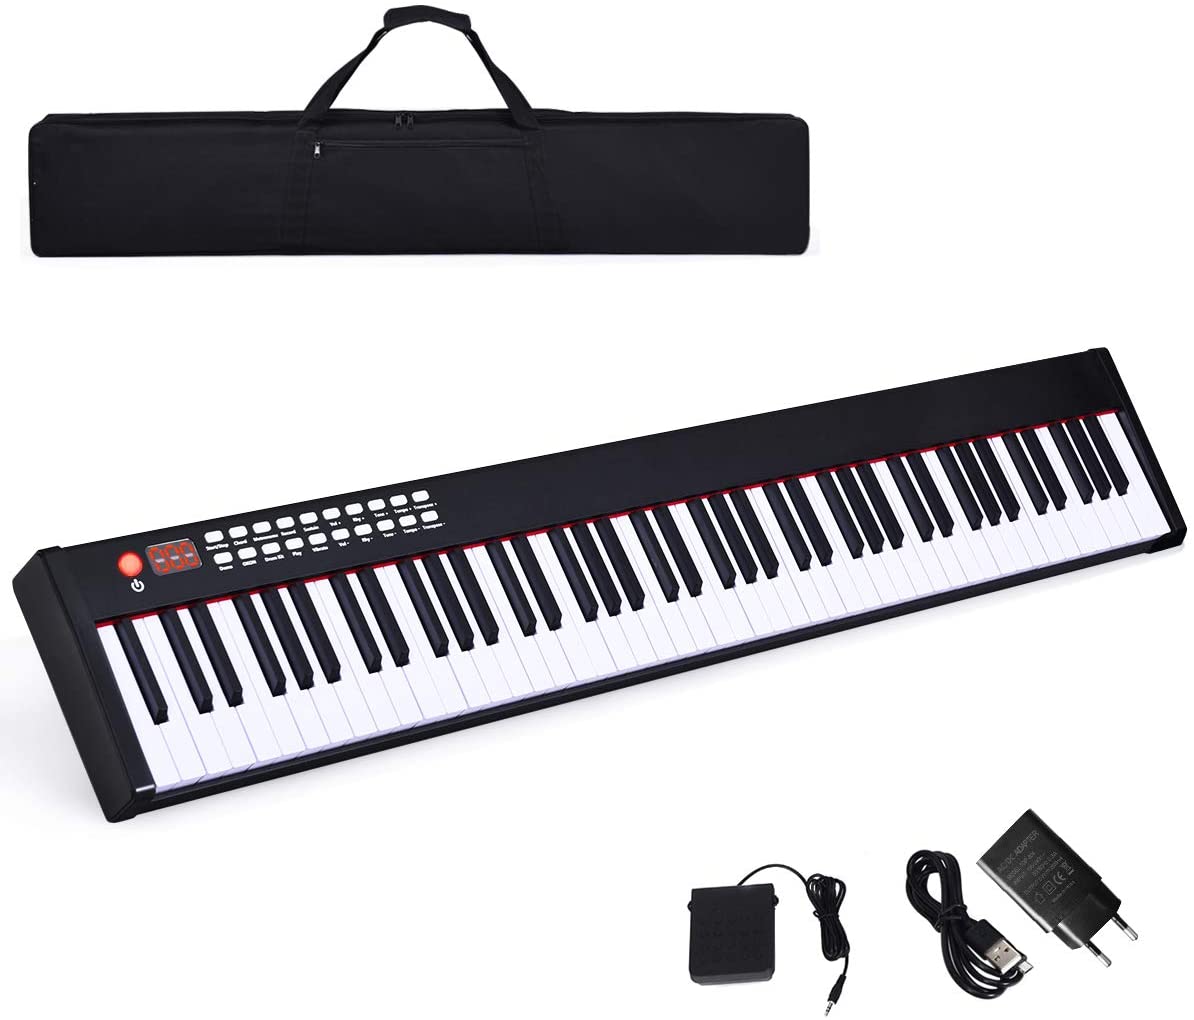 teclado de piano digital de 61 teclas con teclas iluminadas bolsa de transporte Teclado de piano electrónico micrófono 